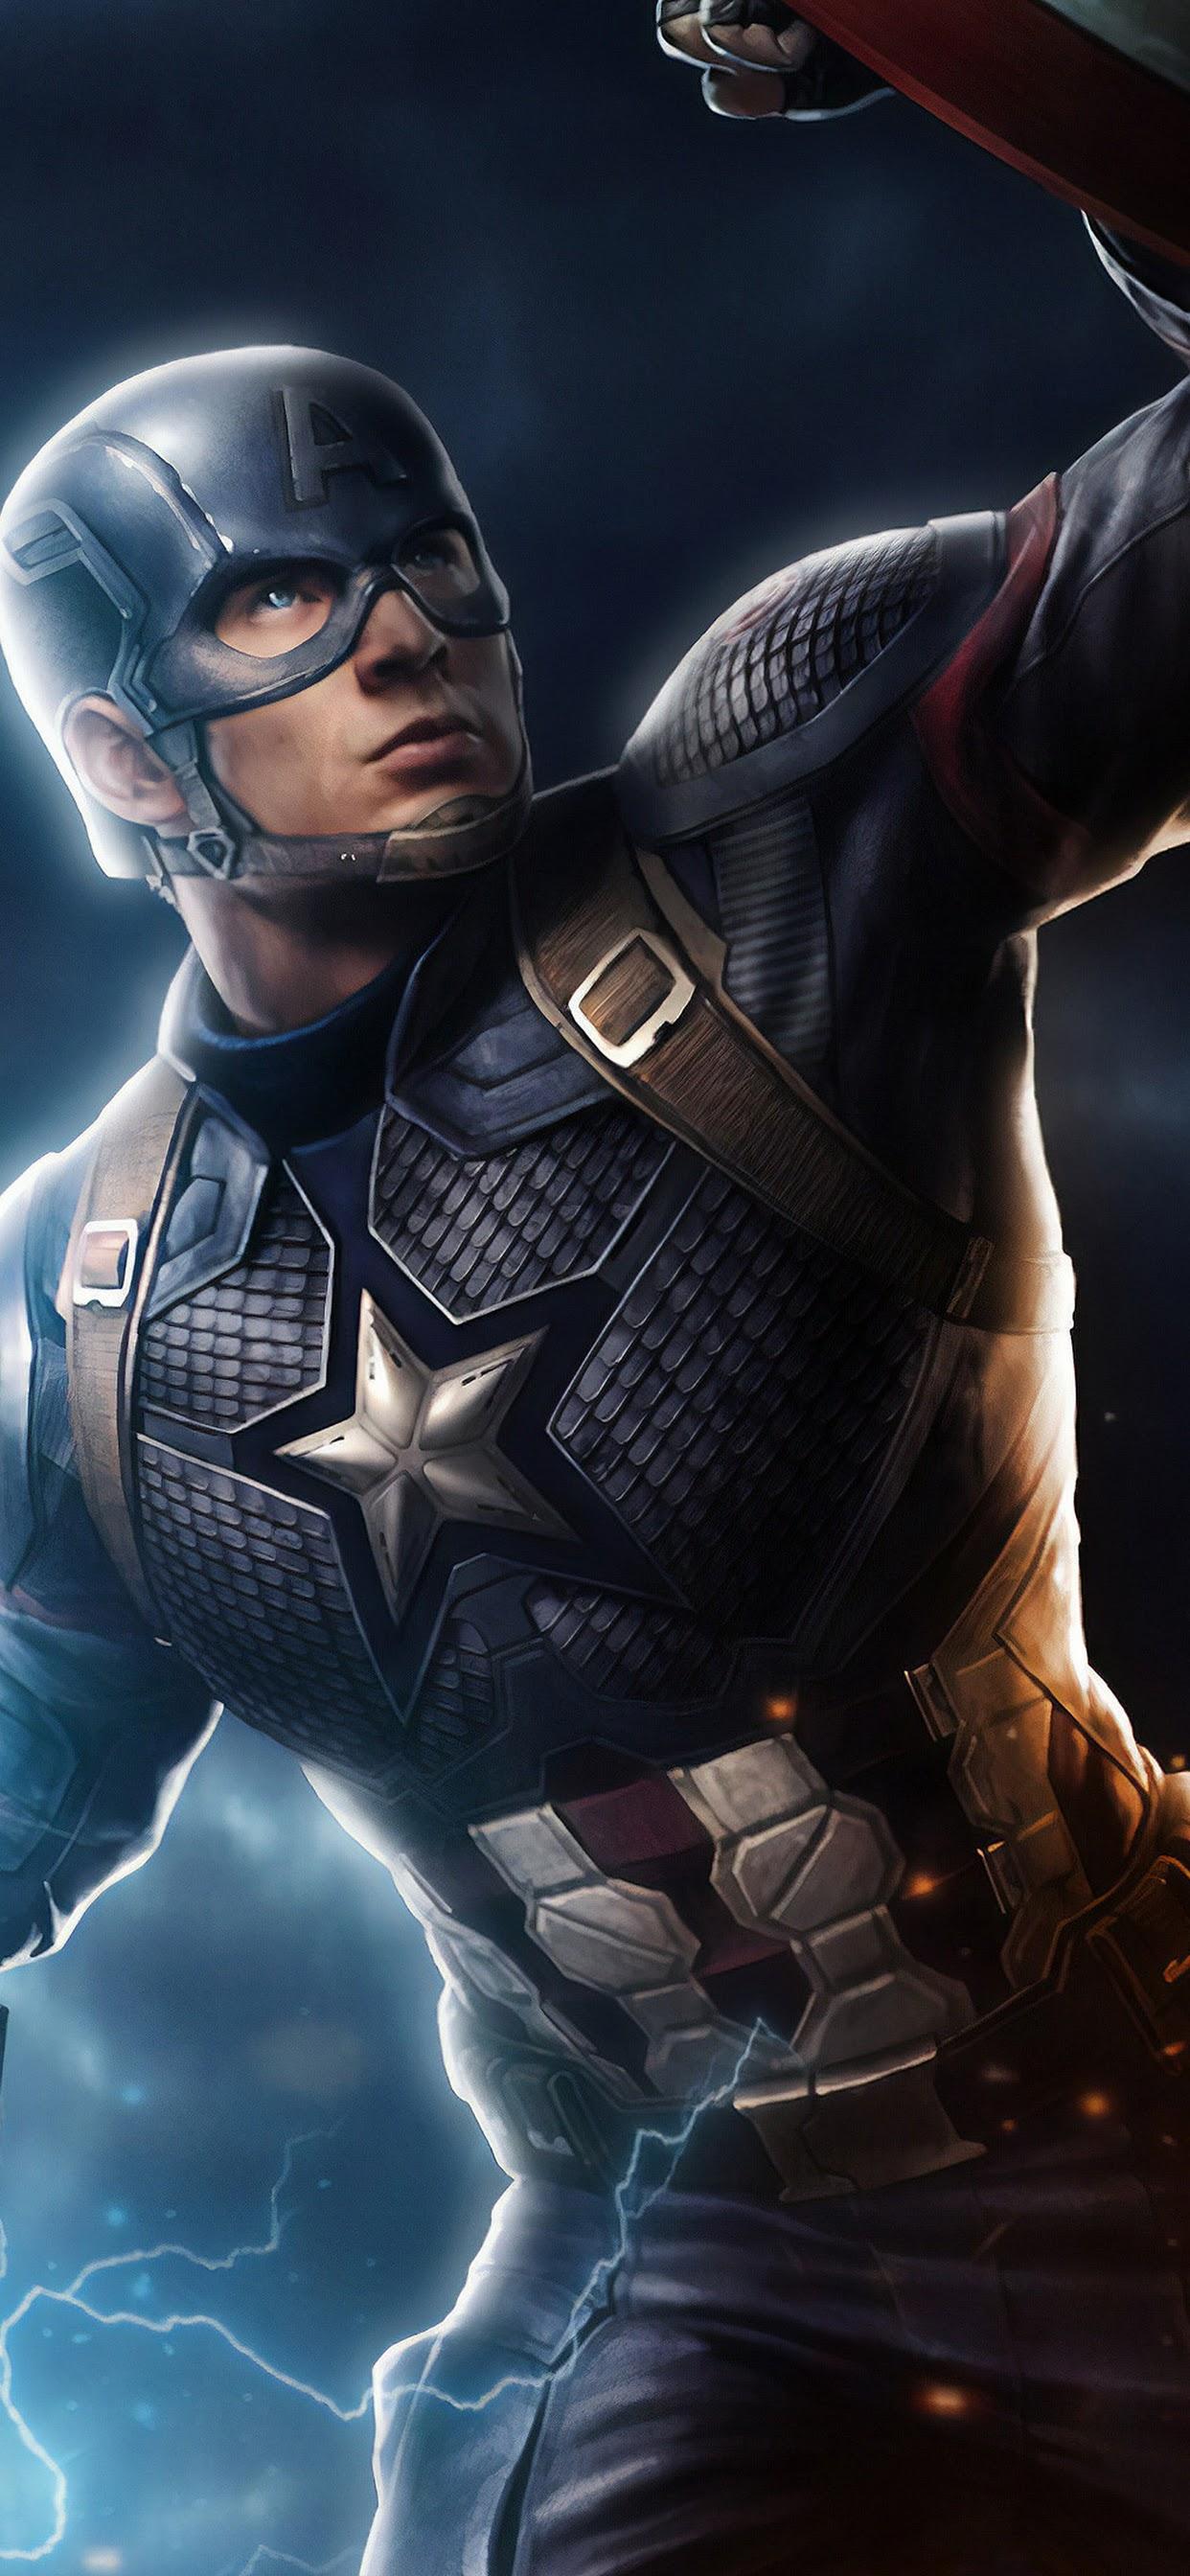 Avengers: Endgame Captain America Mjolnir Hammer Lightning